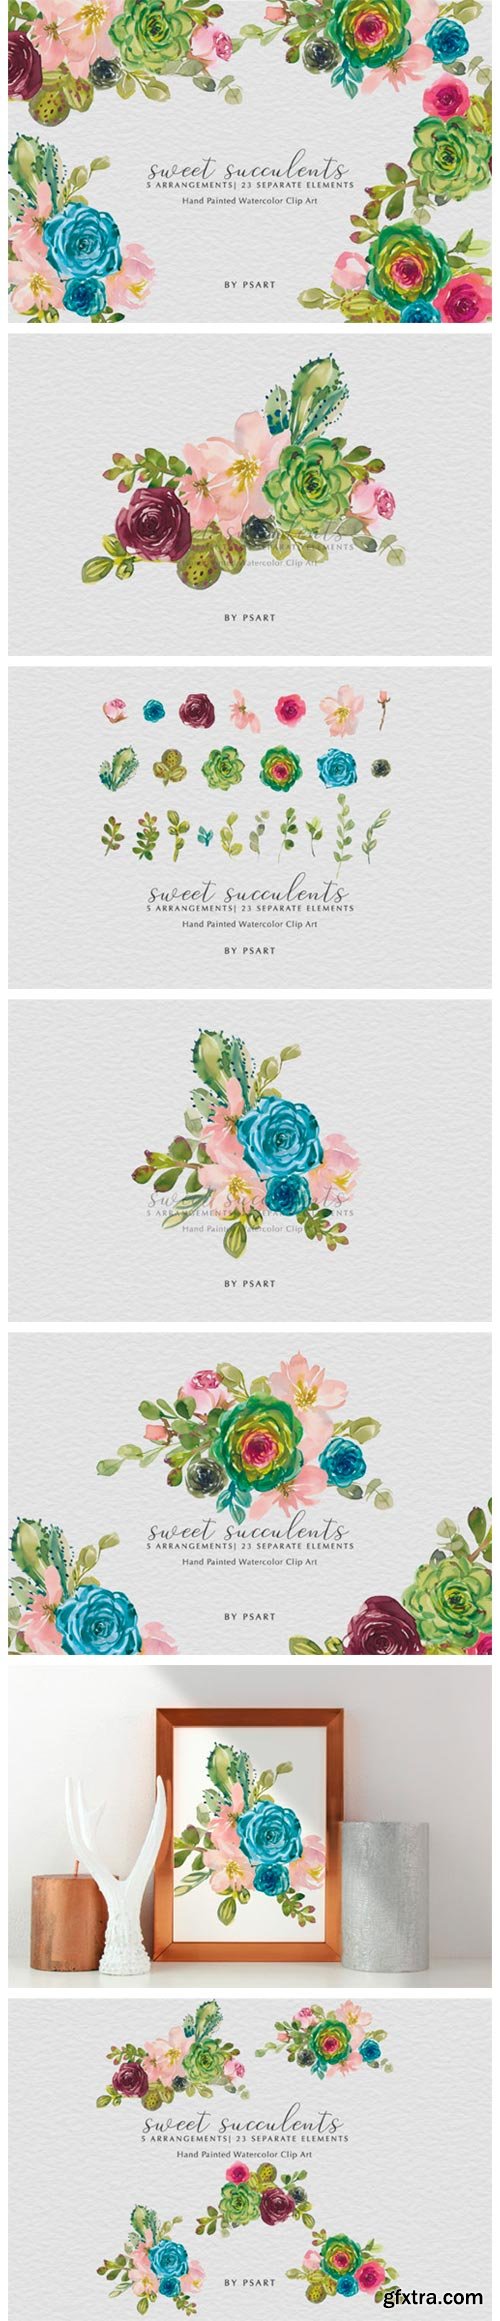 Watercolor Succulents & Florals Clip Art 3187455